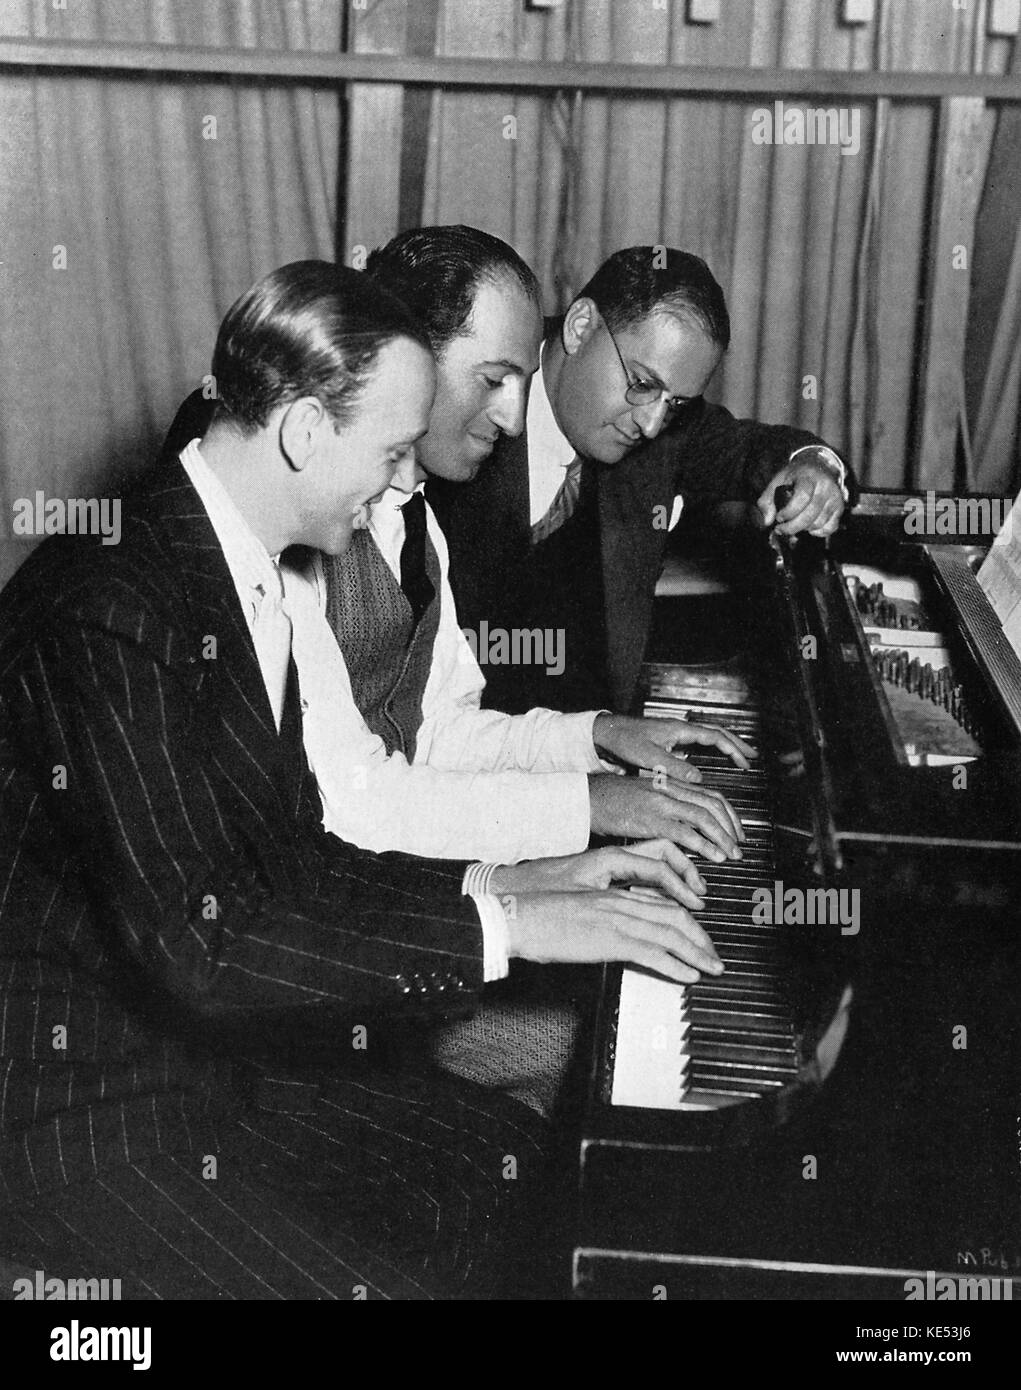 Fred Astaire. George e Ira Gershwin en rehearlalfor 'Shall We Dance'. Pianista y compositor norteamericano, el 26 de septiembre de 1898 - 11 de julio de 1937 Foto de stock